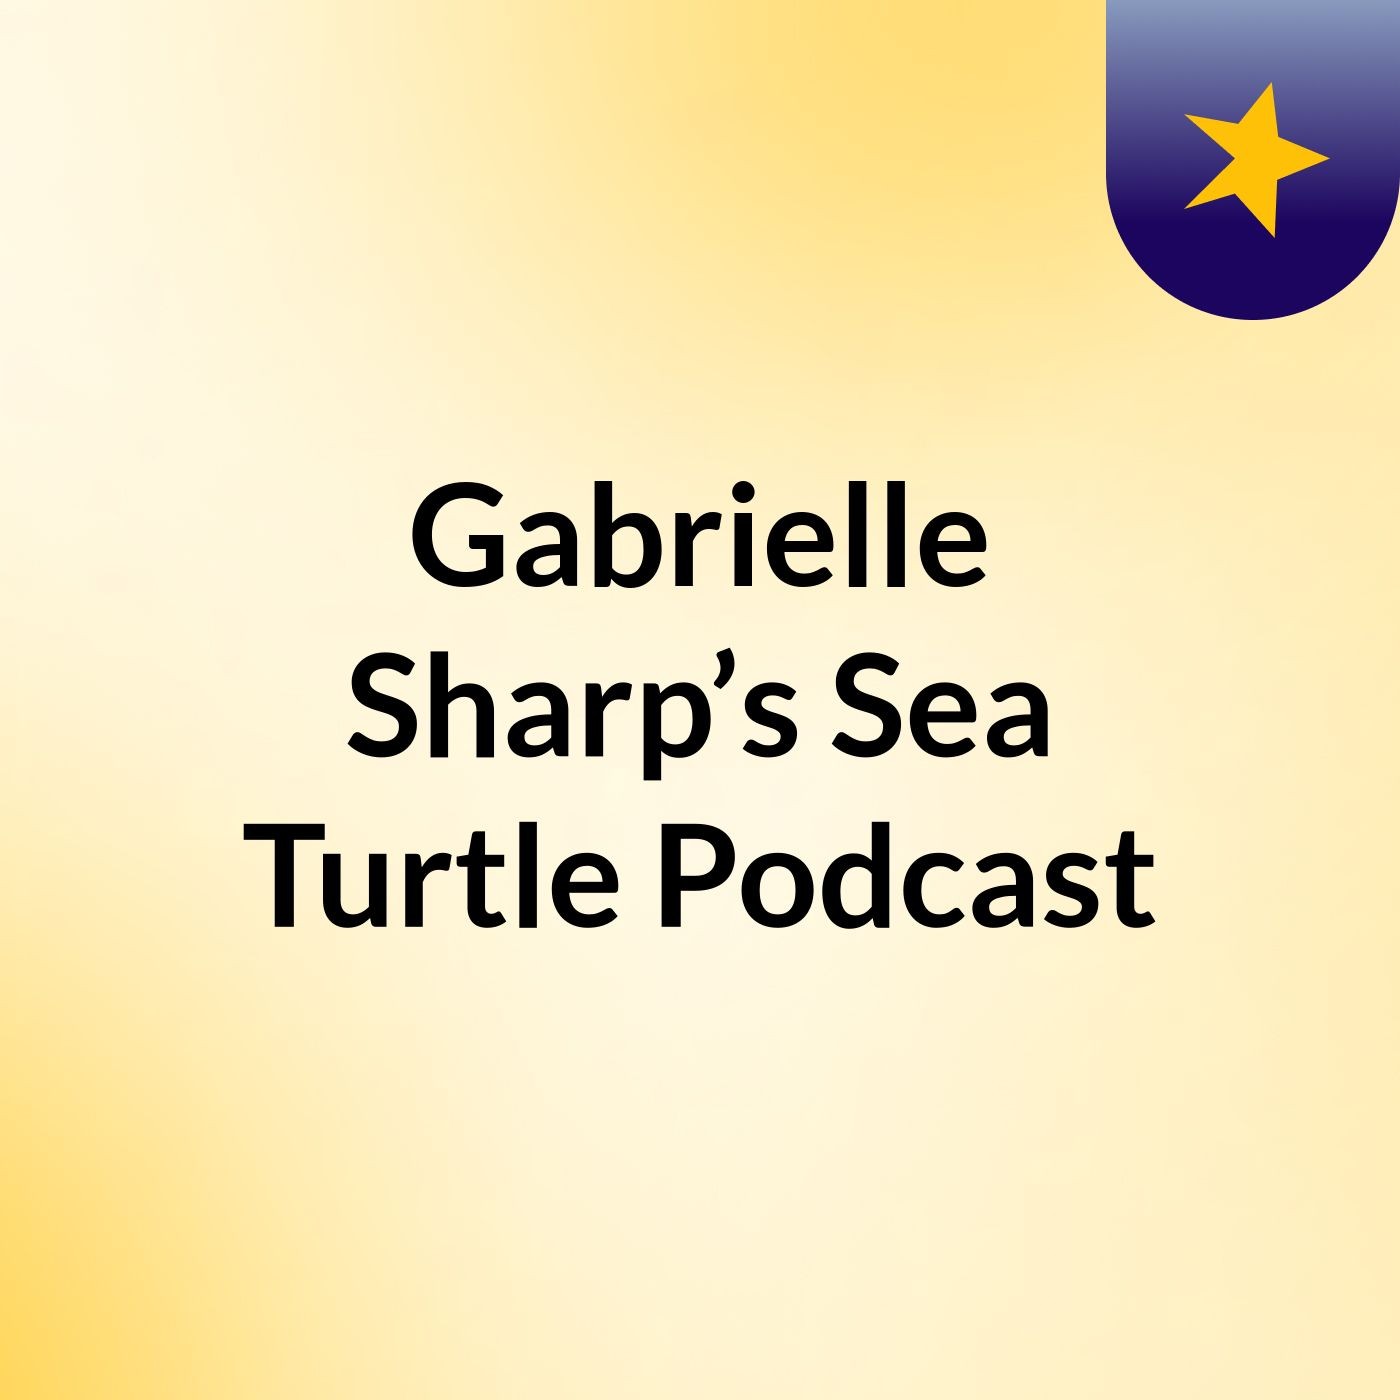 Gabrielle Sharp’s Sea Turtle Podcast